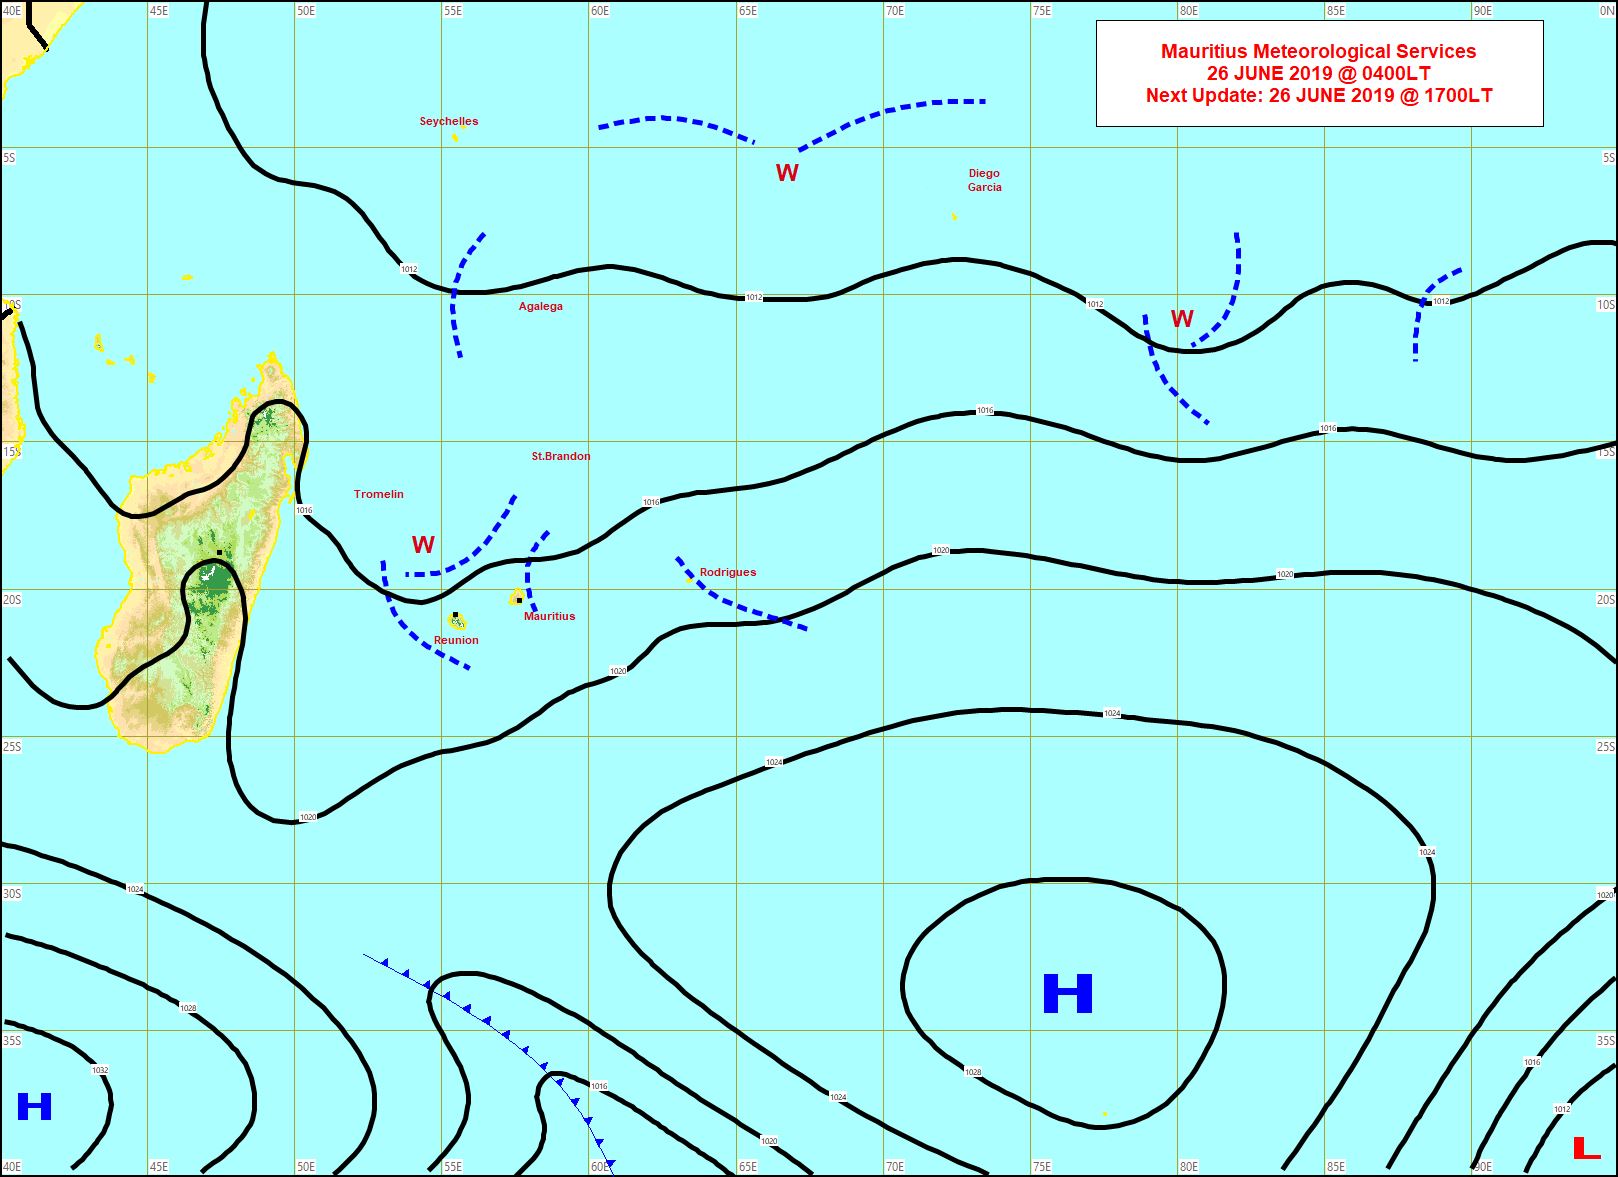 Analyse à 4heures ce matin. Plusieurs lignes d'instabilité(en pointillé) sont dans le voisinage des Iles Soeurs. L'anticyclone(H) loin au Sud-Est est en retrait mais un nouvel anticyclone se rapproche graduellement de notre région par le Sud-Ouest. MMS